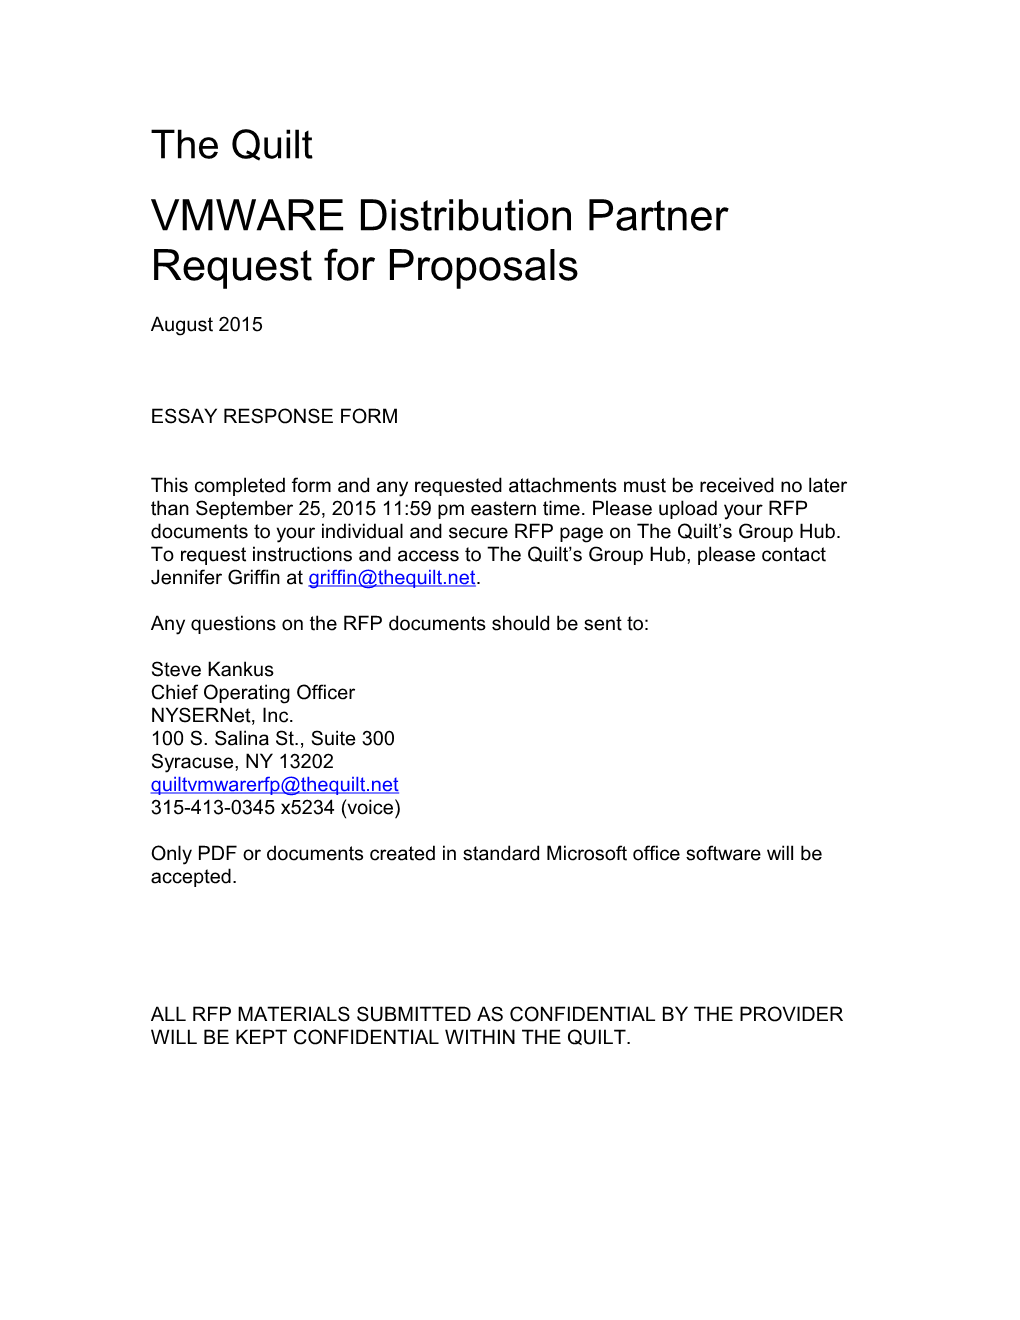 VMWARE Distribution Partner